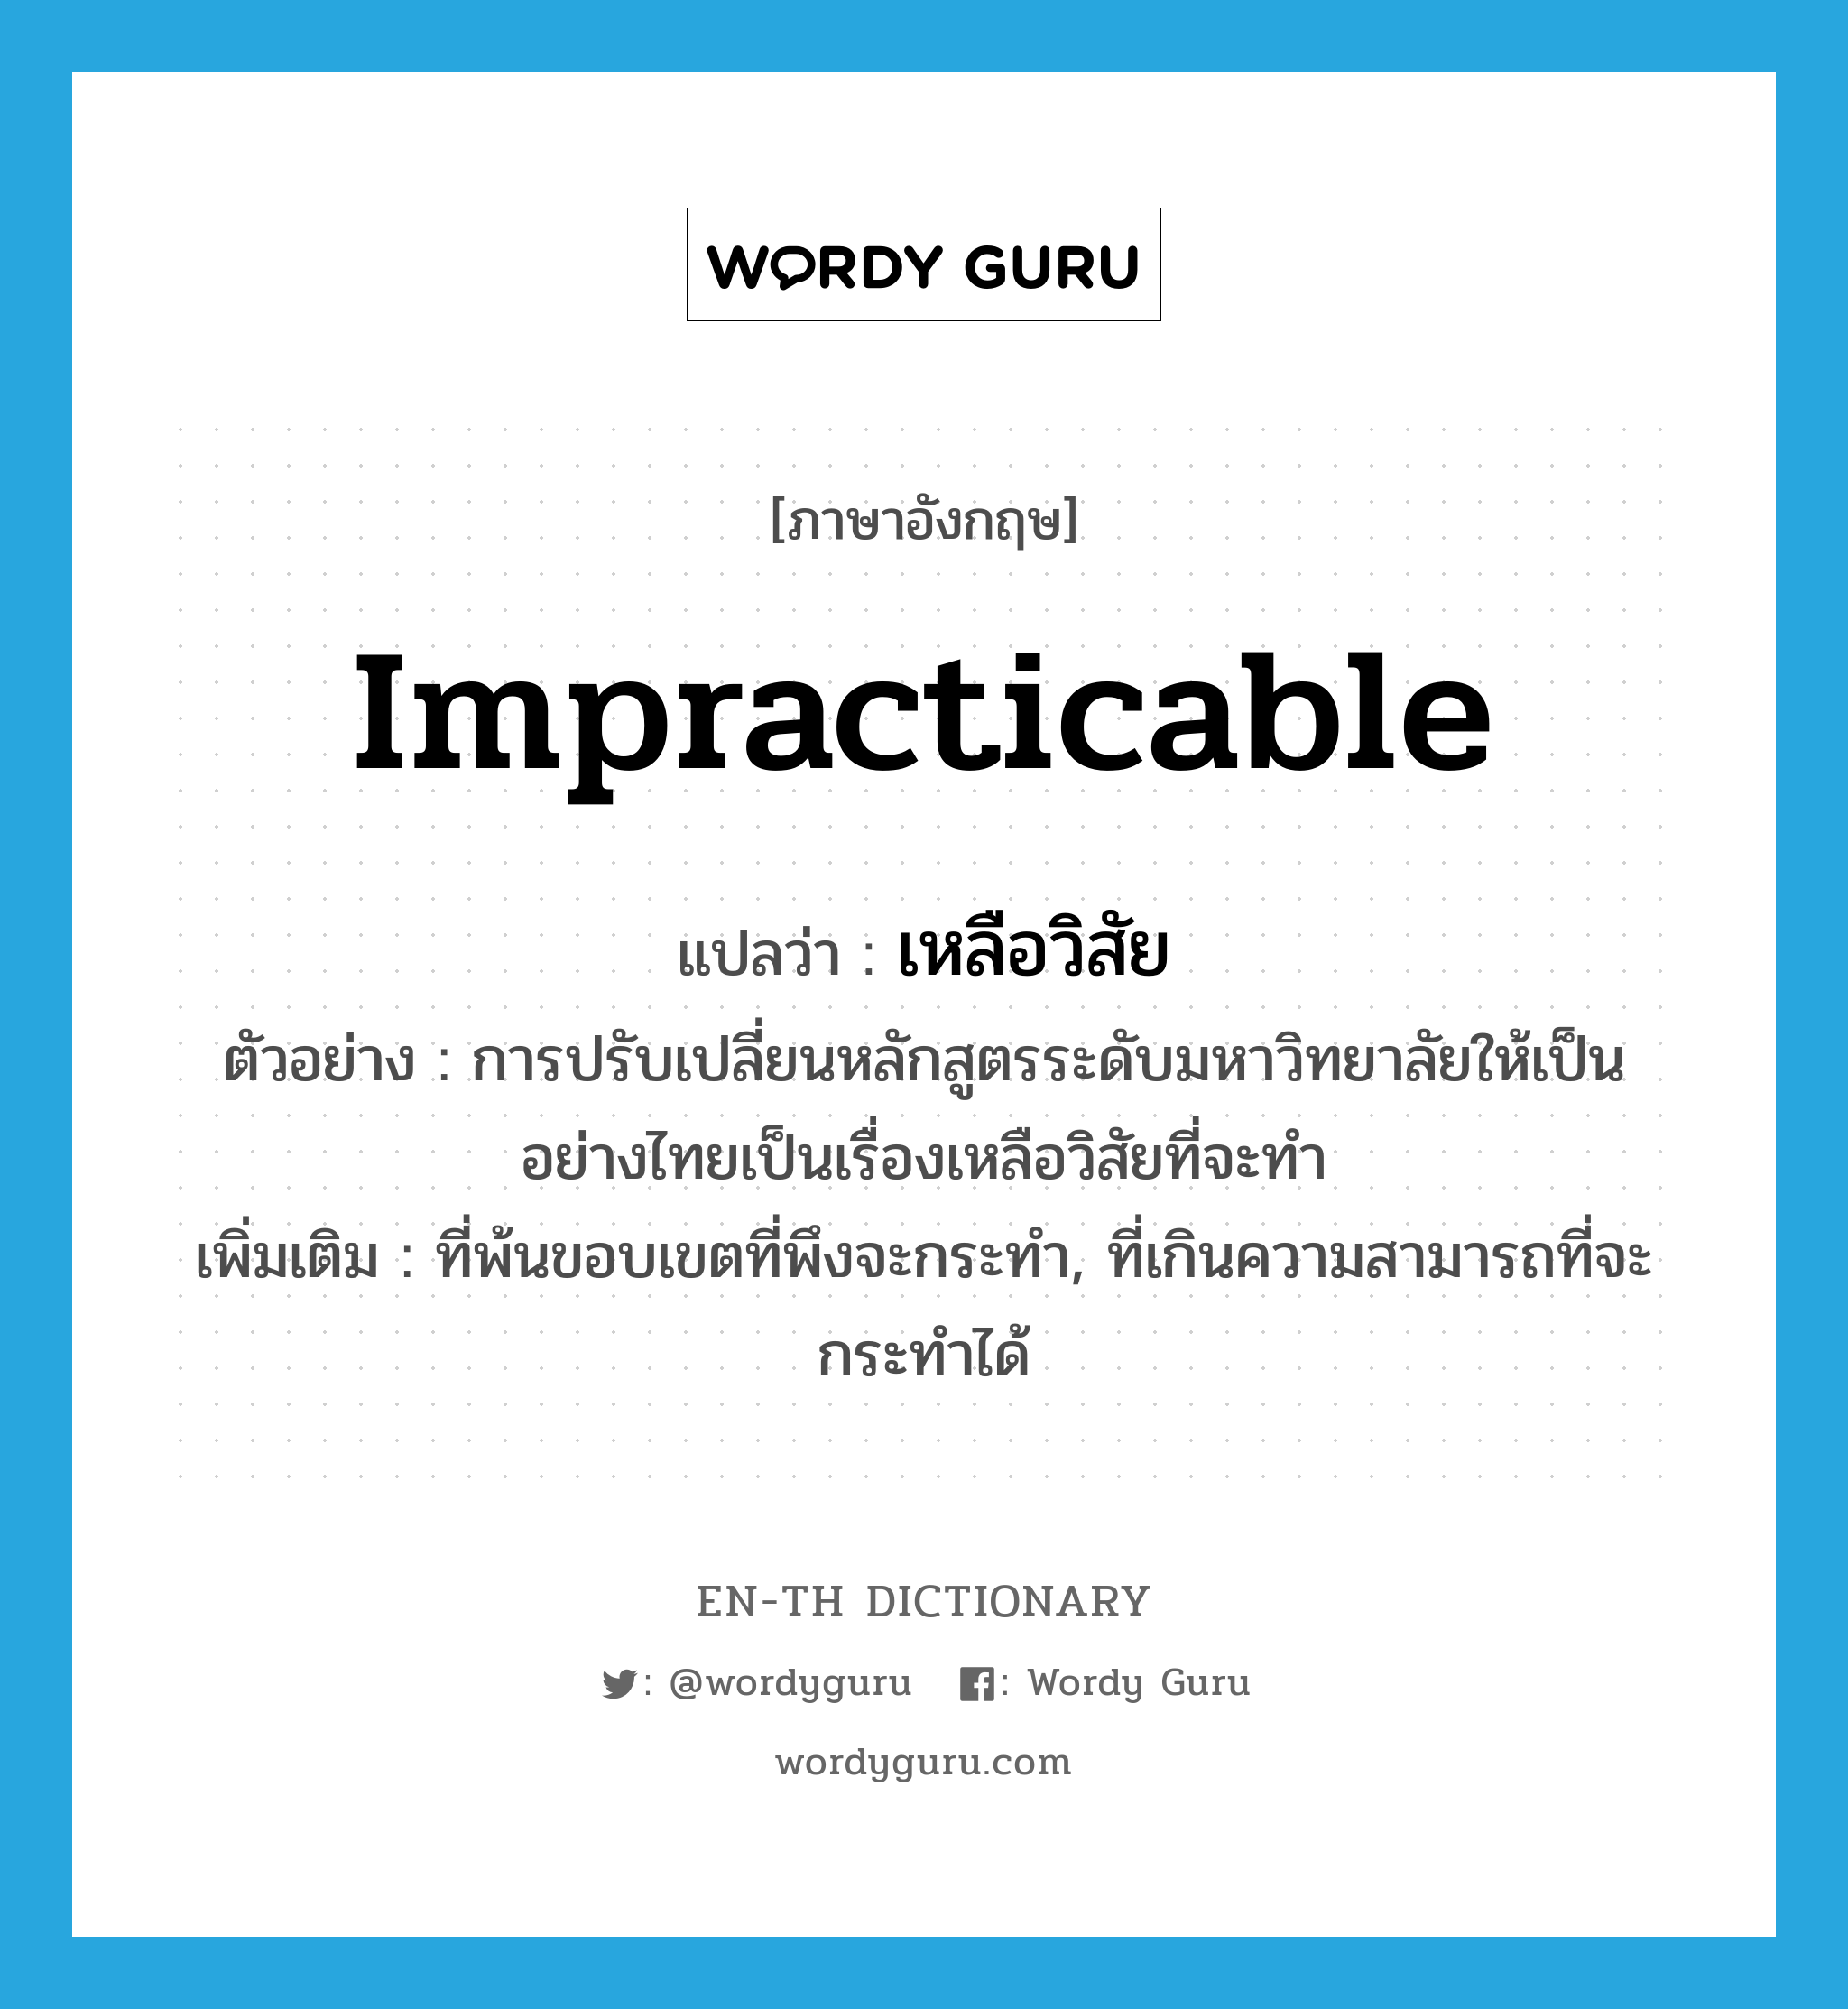 impracticable แปลว่า?, คำศัพท์ภาษาอังกฤษ impracticable แปลว่า เหลือวิสัย ประเภท ADJ ตัวอย่าง การปรับเปลี่ยนหลักสูตรระดับมหาวิทยาลัยให้เป็นอย่างไทยเป็นเรื่องเหลือวิสัยที่จะทำ เพิ่มเติม ที่พ้นขอบเขตที่พึงจะกระทำ, ที่เกินความสามารถที่จะกระทำได้ หมวด ADJ